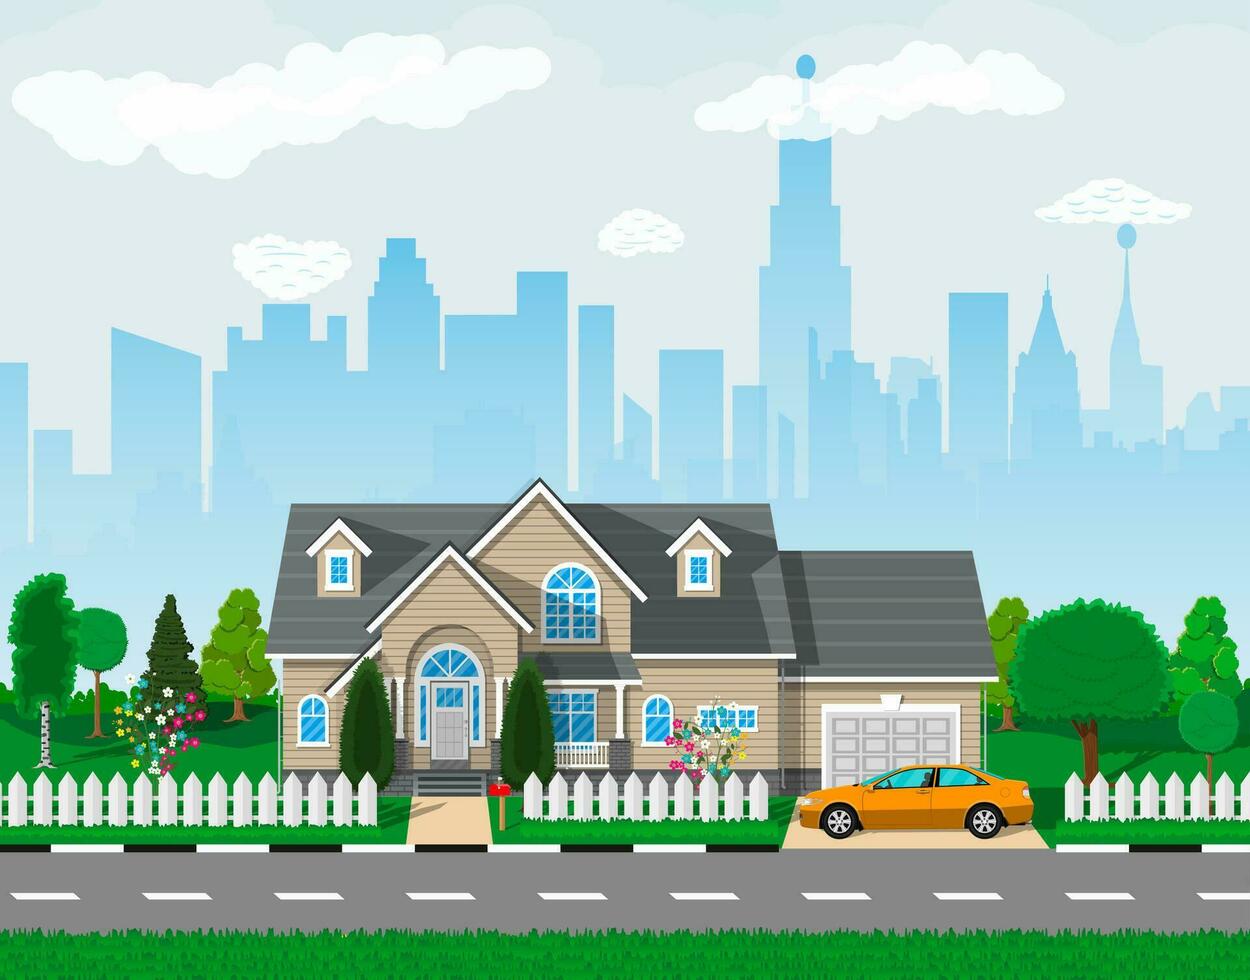 privado suburbano casa con auto, árboles, camino, cielo y nubes paisaje urbano vector ilustración en plano estilo